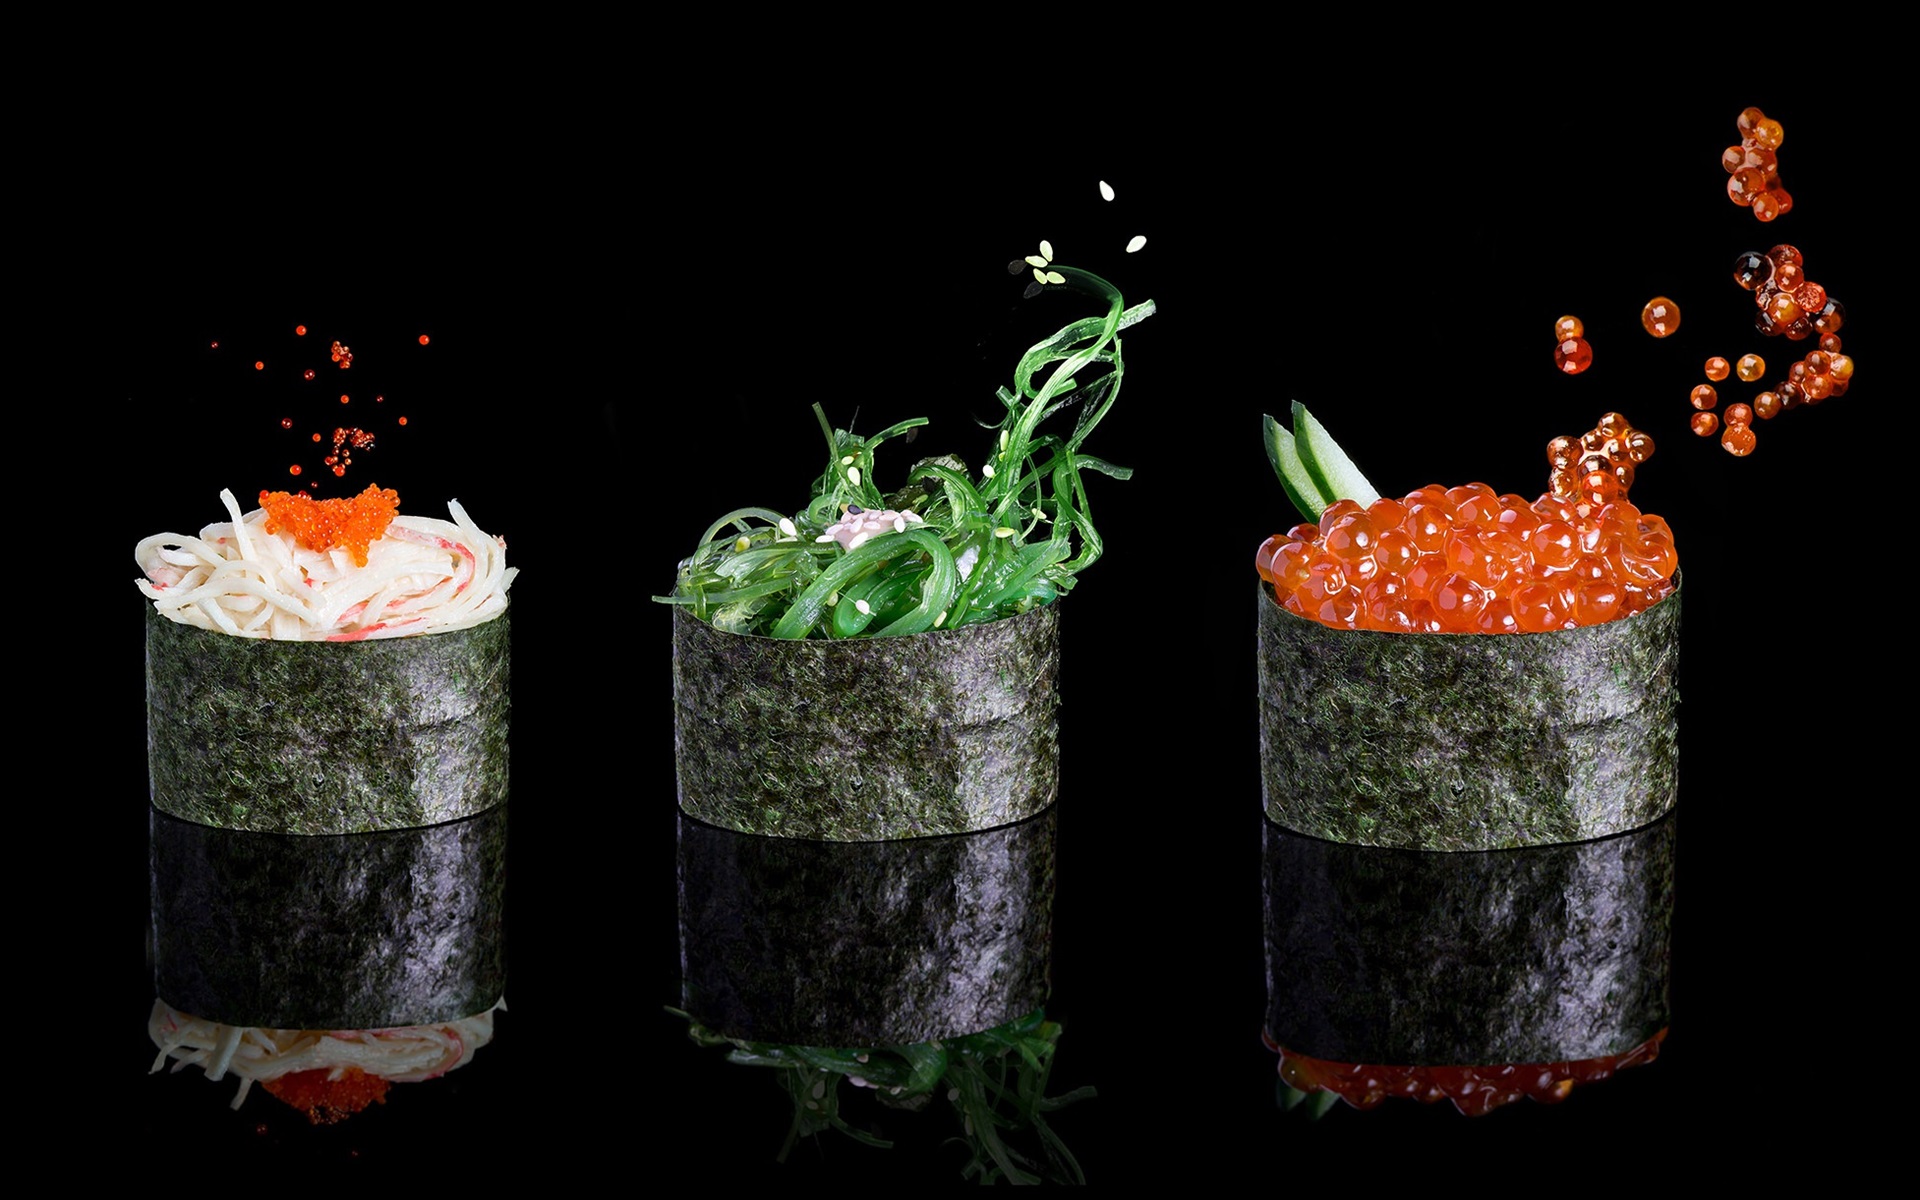 Wallpaper Food, Nori, Caviar, Sesame, Vegetable, Black - Food Wallpaper Black Background - HD Wallpaper 